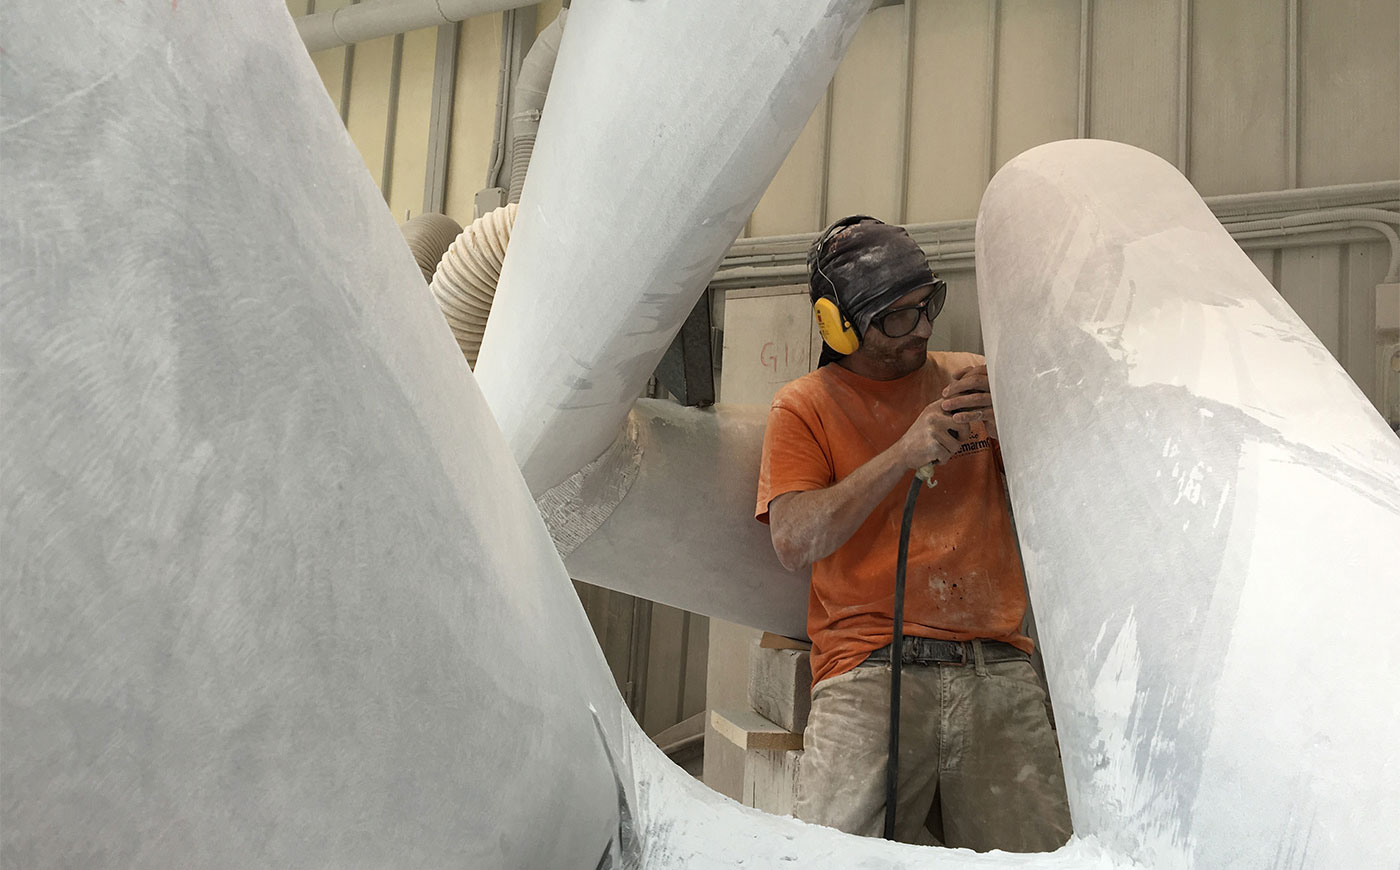 Richard Erdman Studios abstract sculpture process